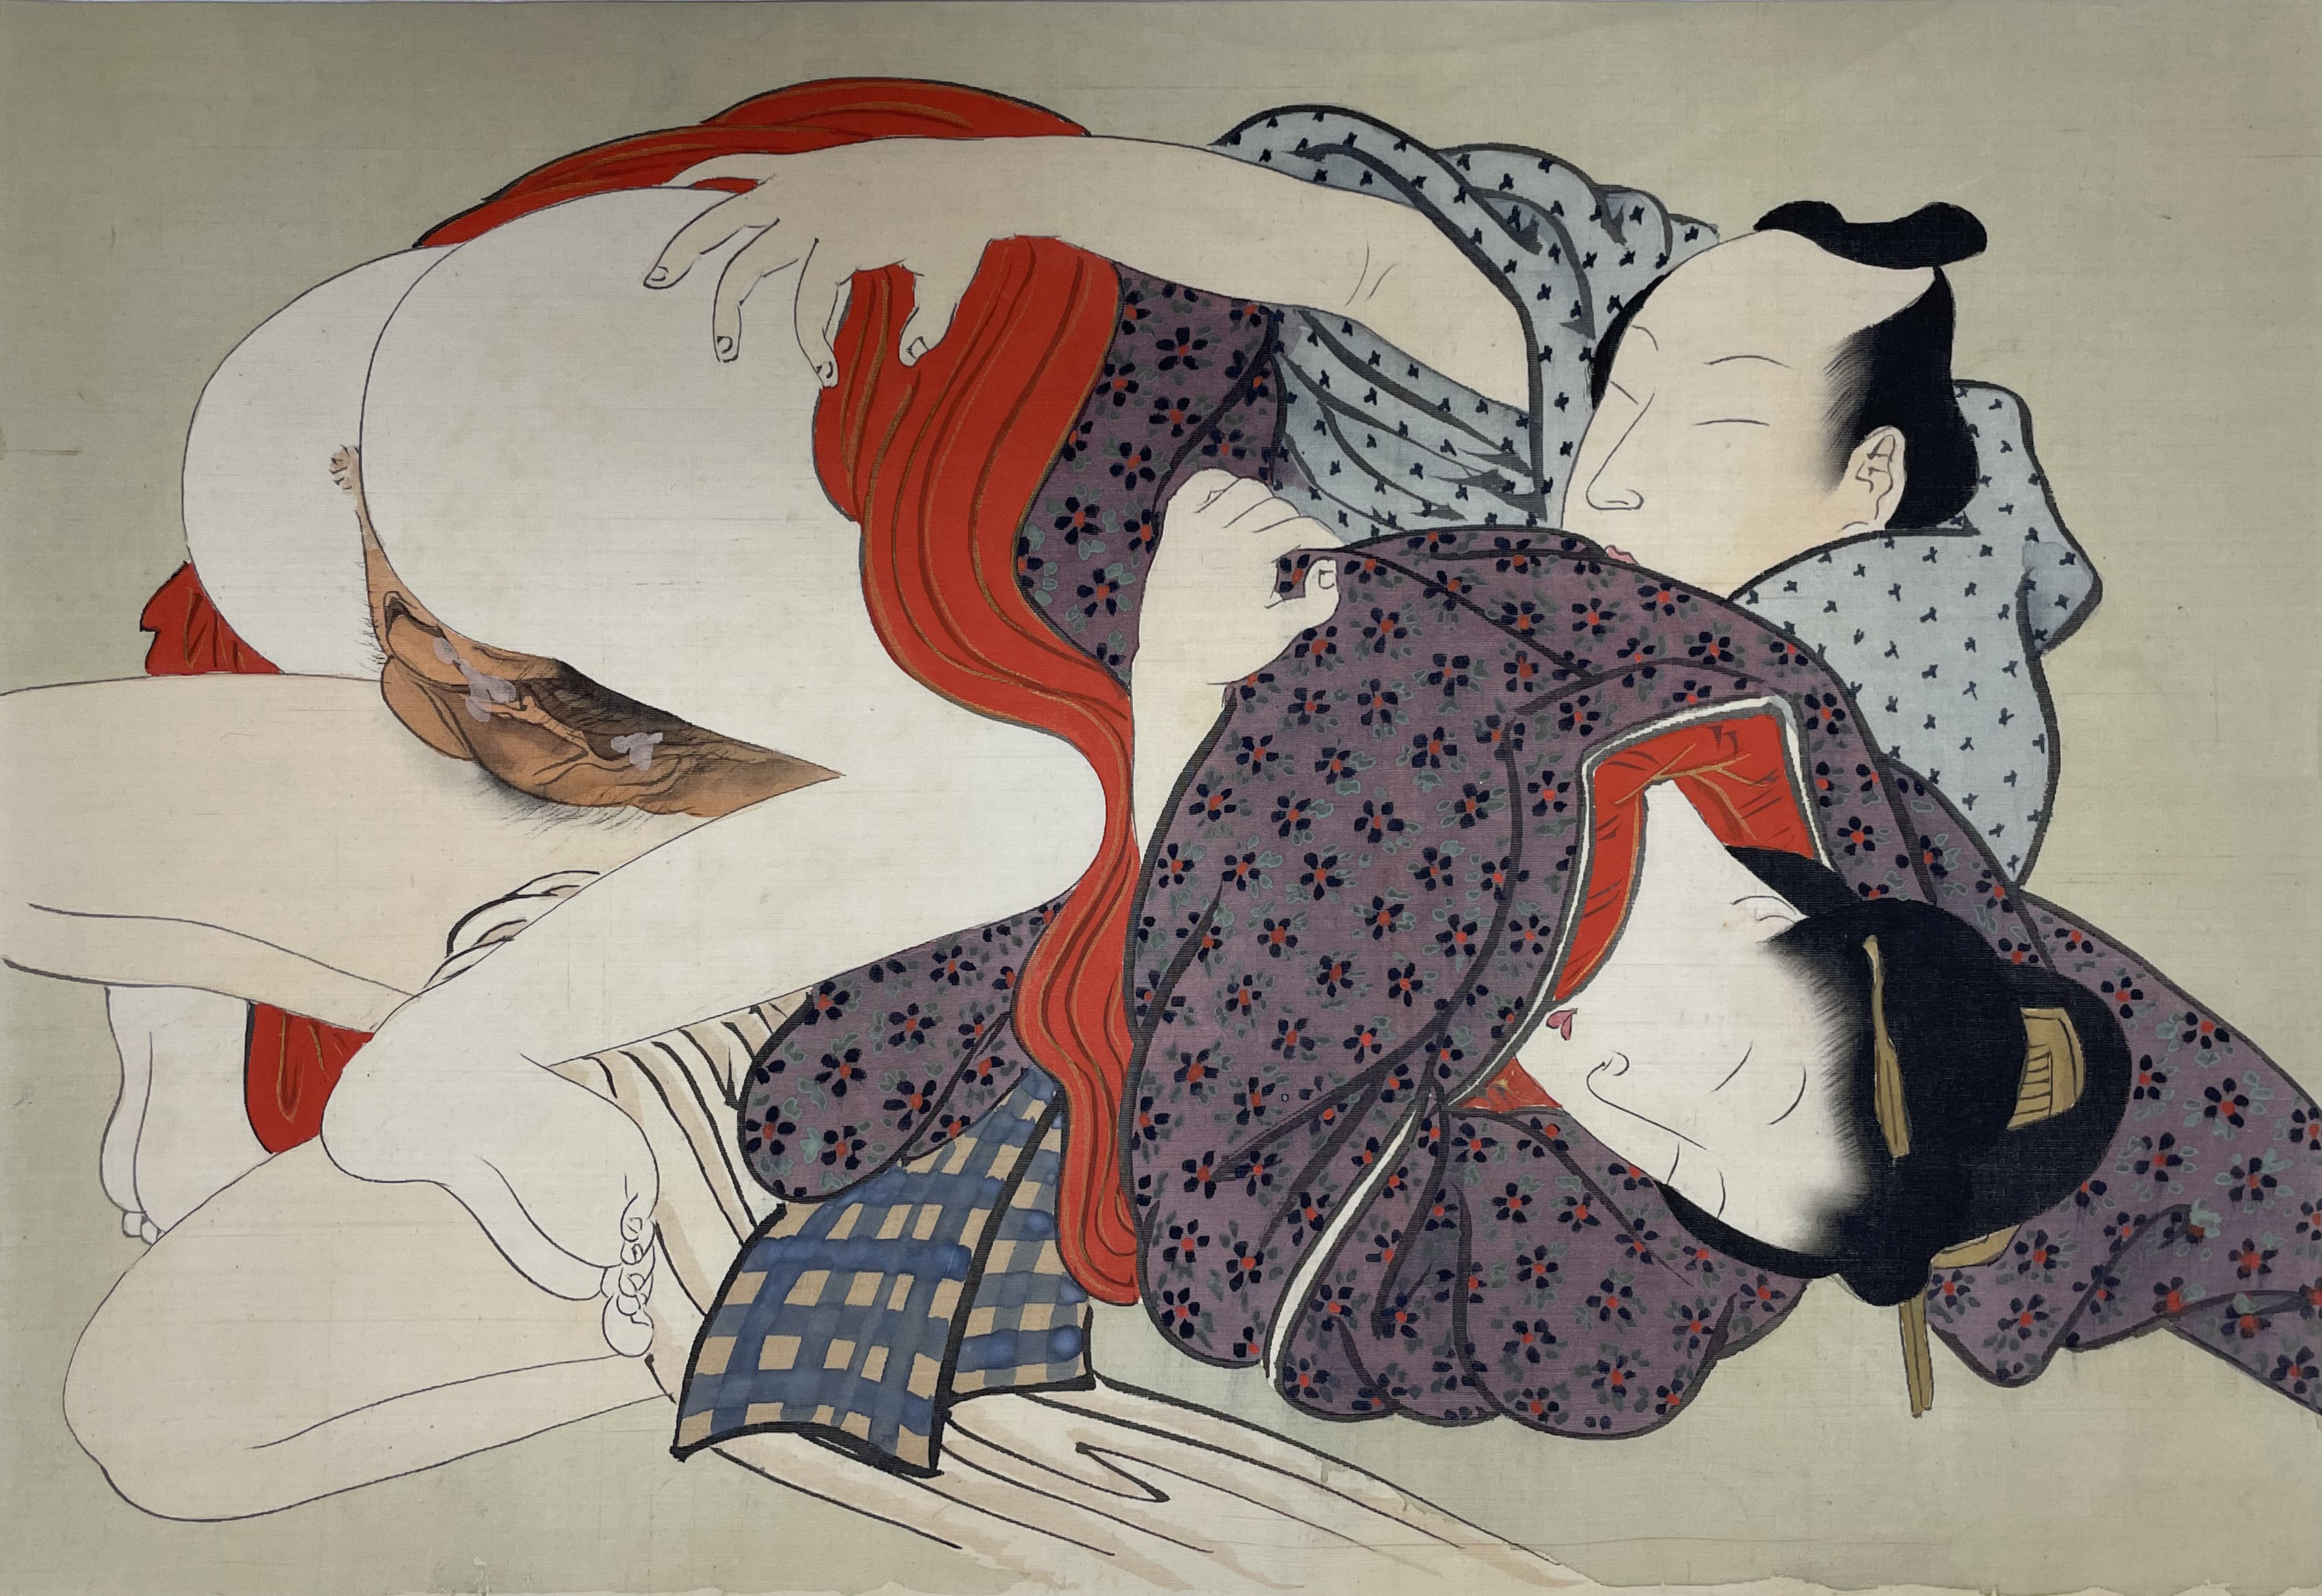 【日本版画】扬州周延 绢布春画 1891年 35 x 25cm 